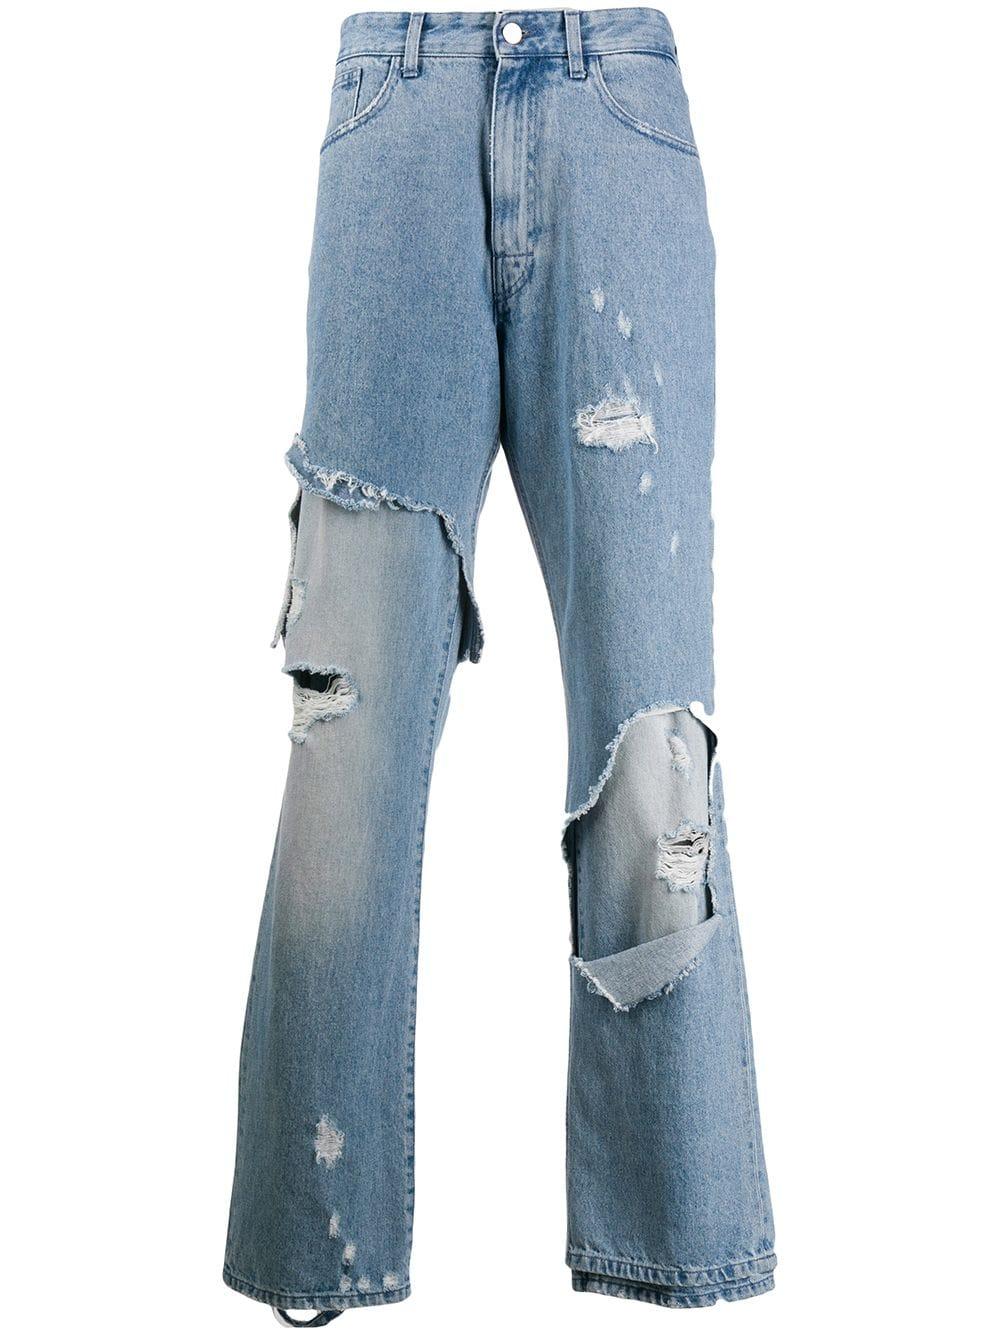 19500円 ずっと気になってた RAF Simons jeans with patches